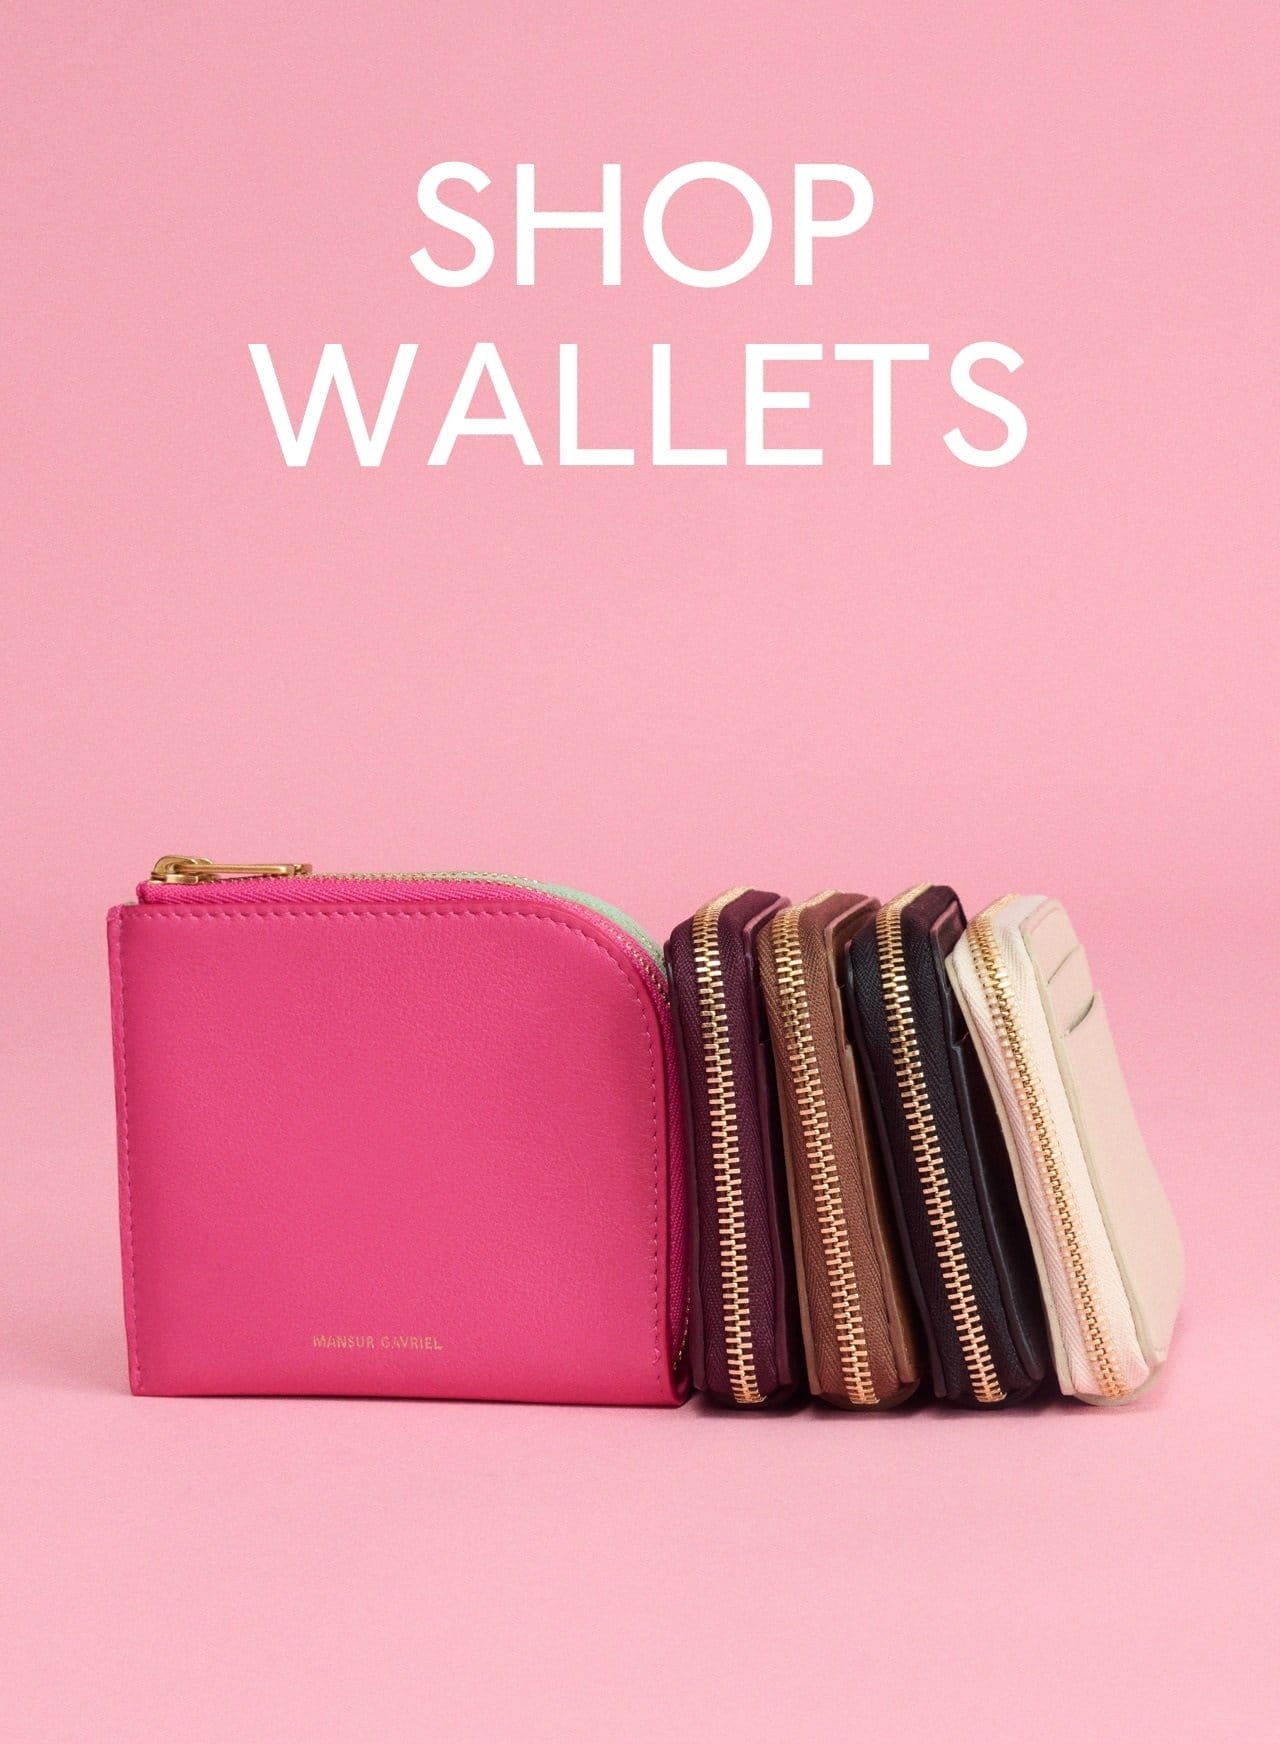 Shop wallets.